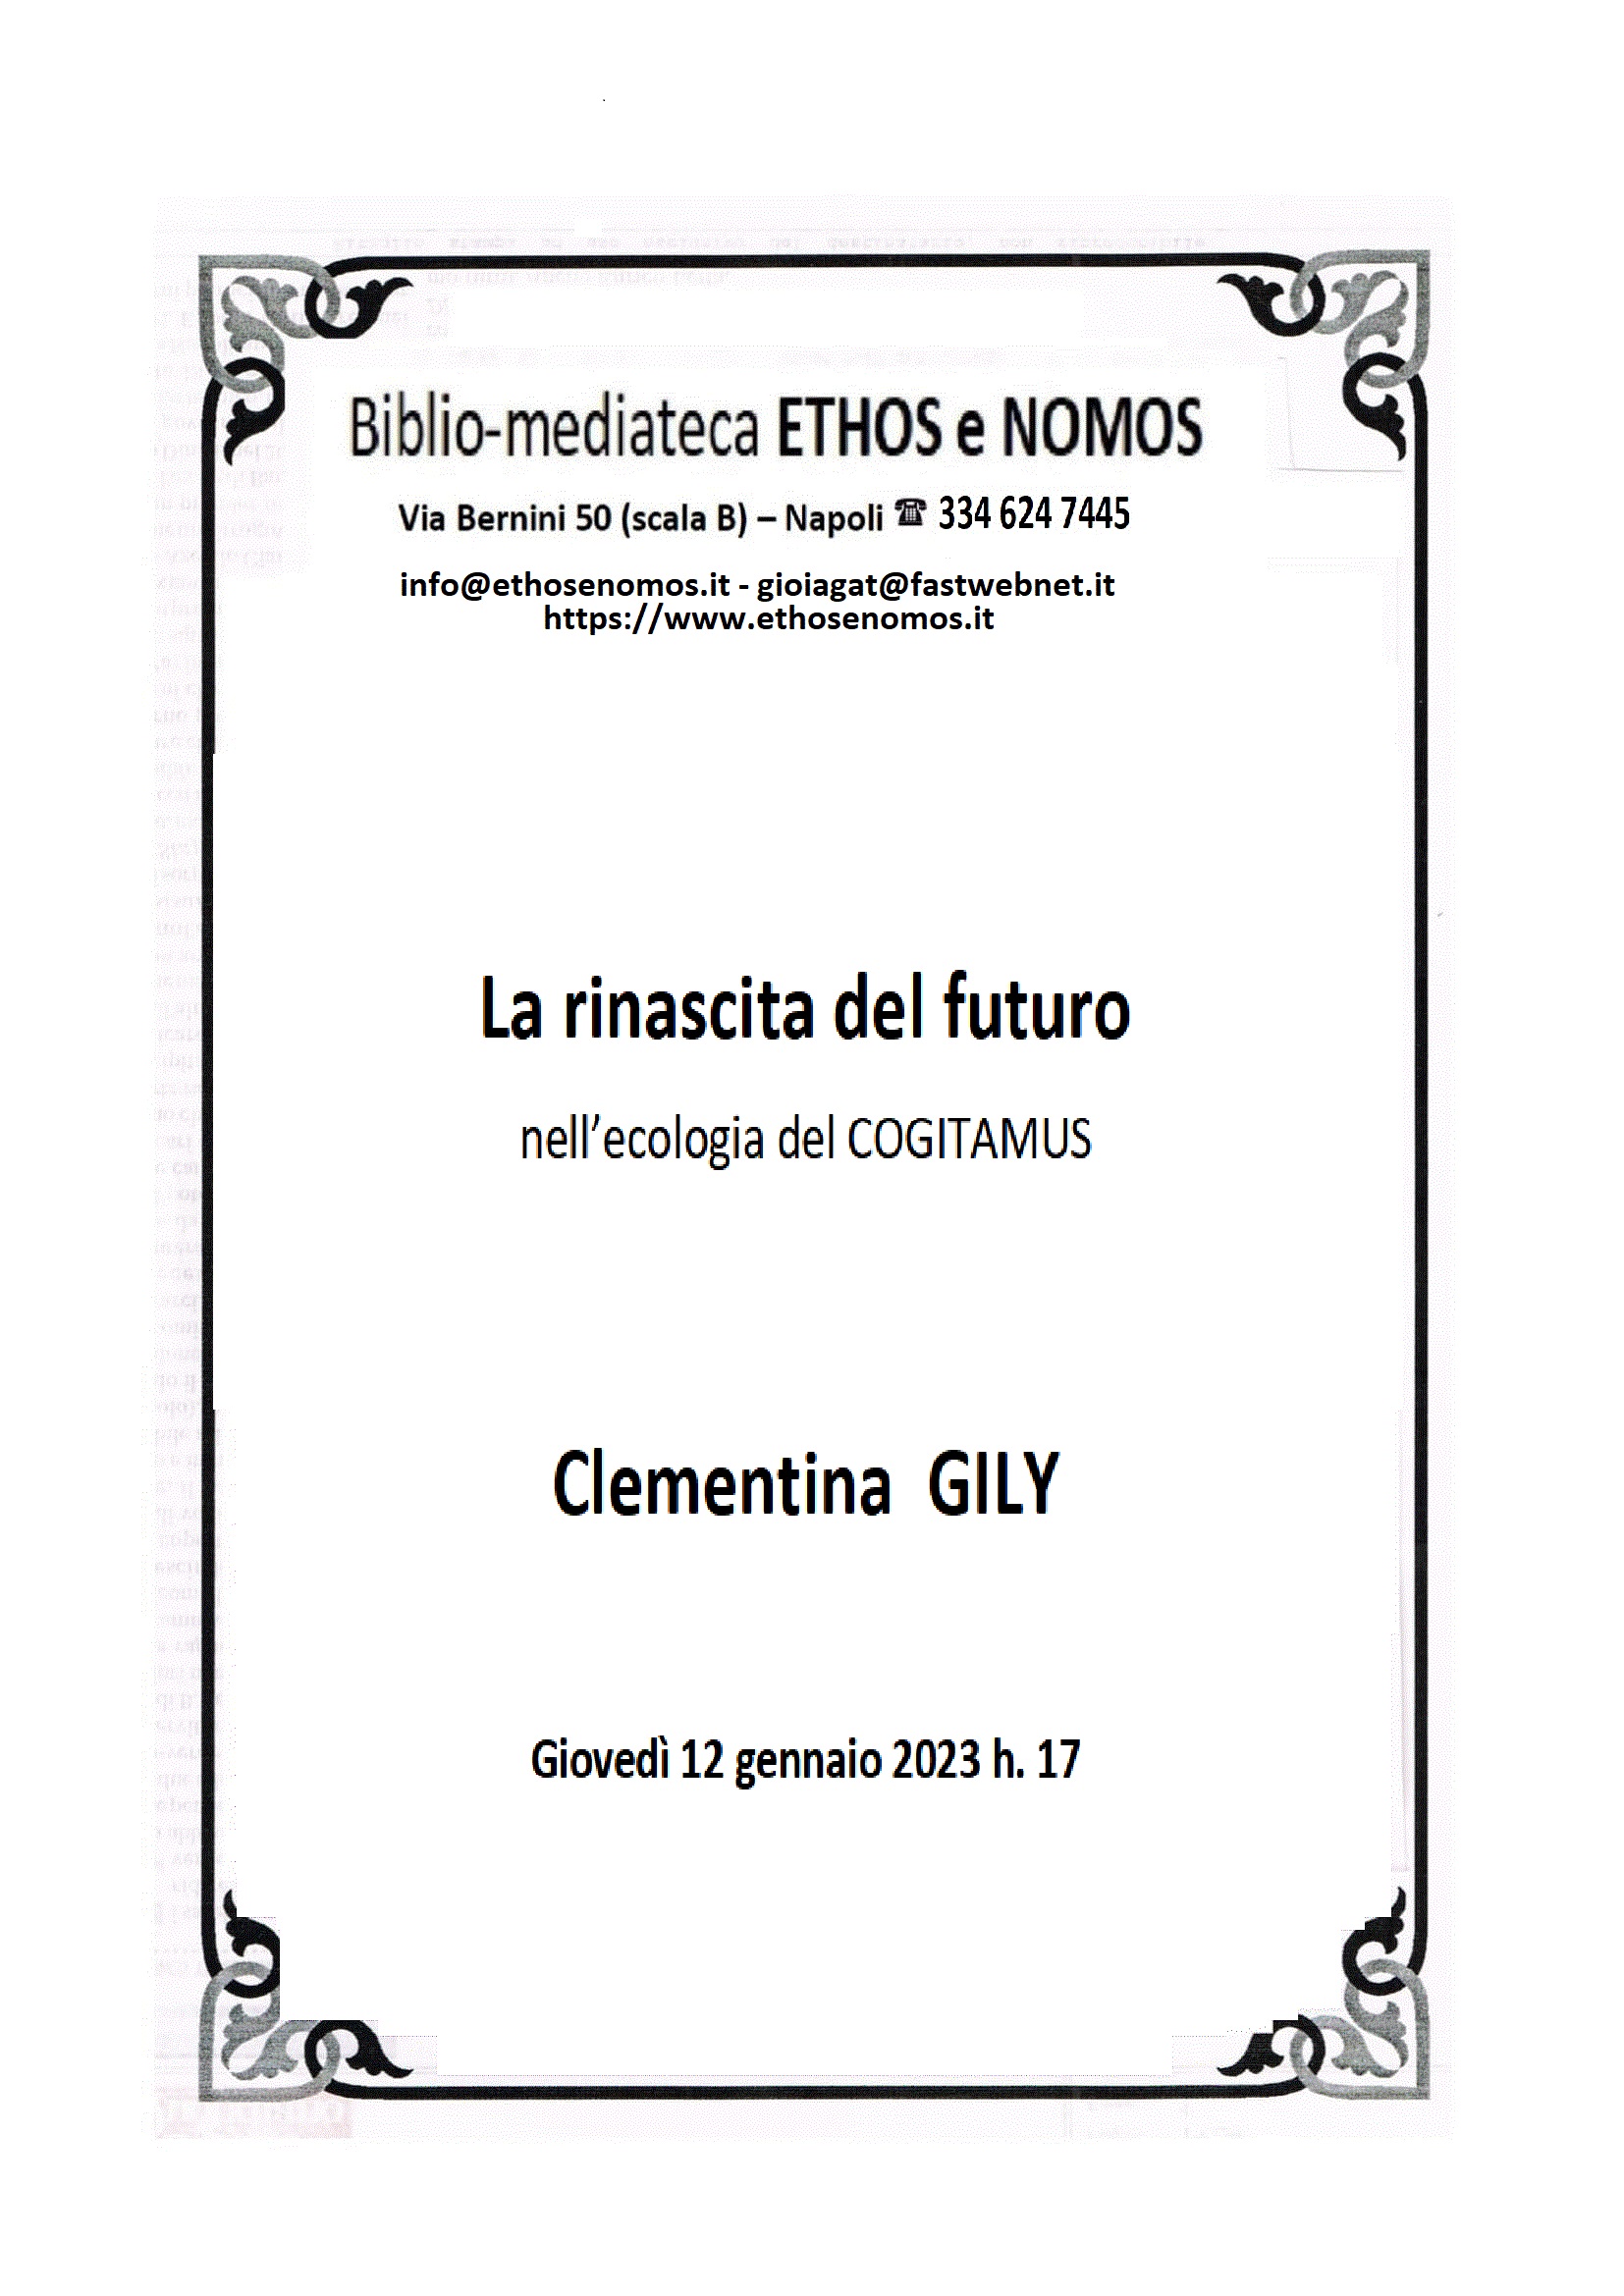 Clementina GILY - La rinascita del futuro nell'ecologia del COGITAMUS